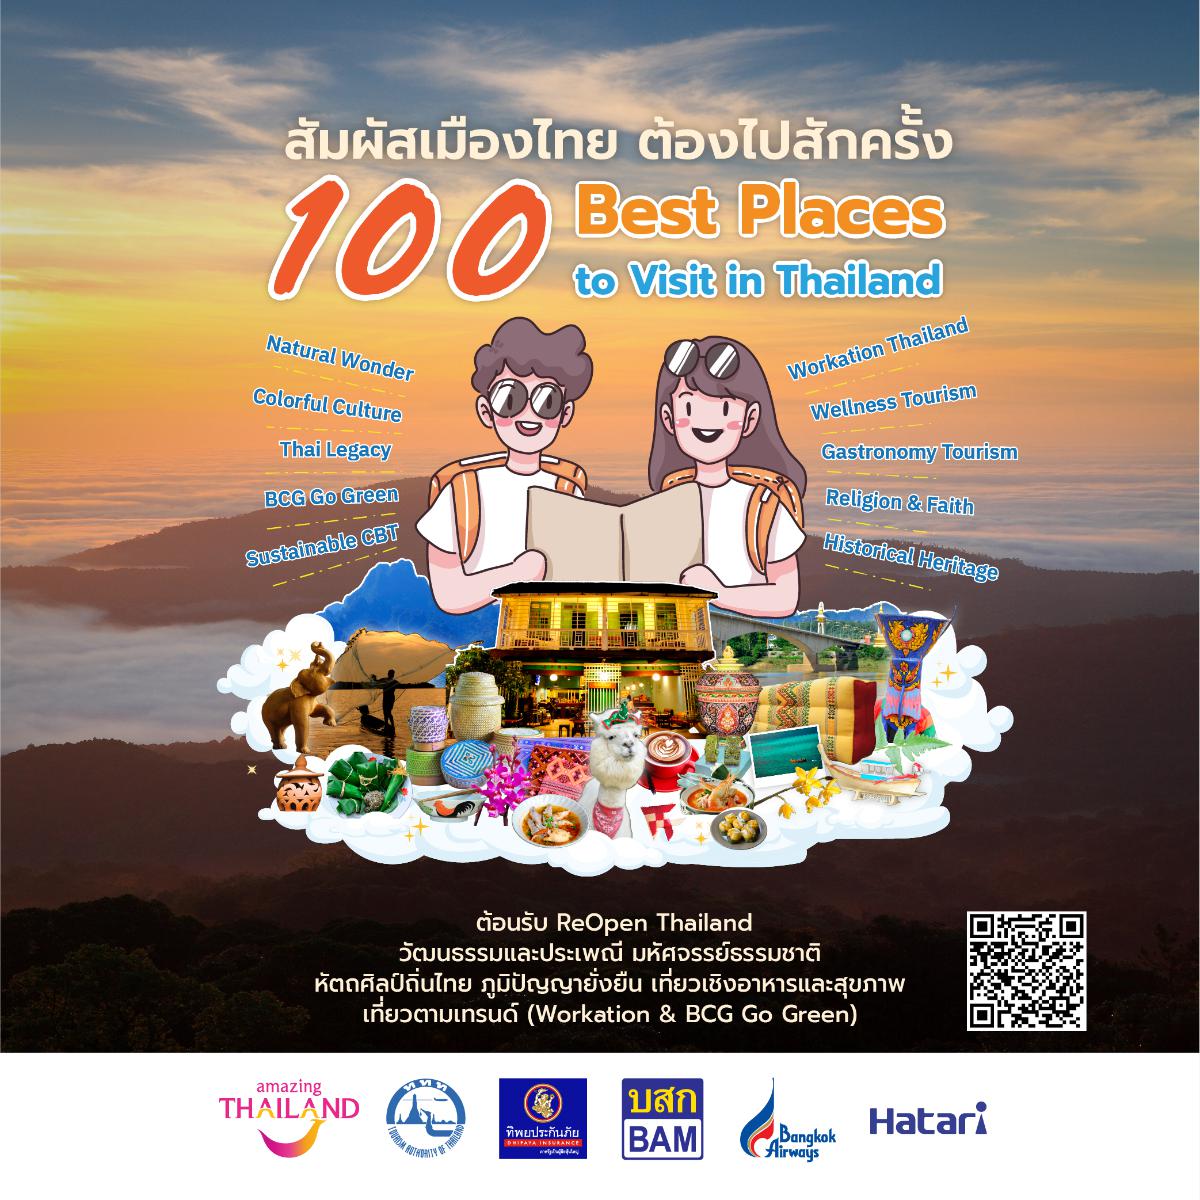 เมืองไทย “ชุมชนแห่งภูมิปัญญาอันยั่งยืน” - Sustainable CBT